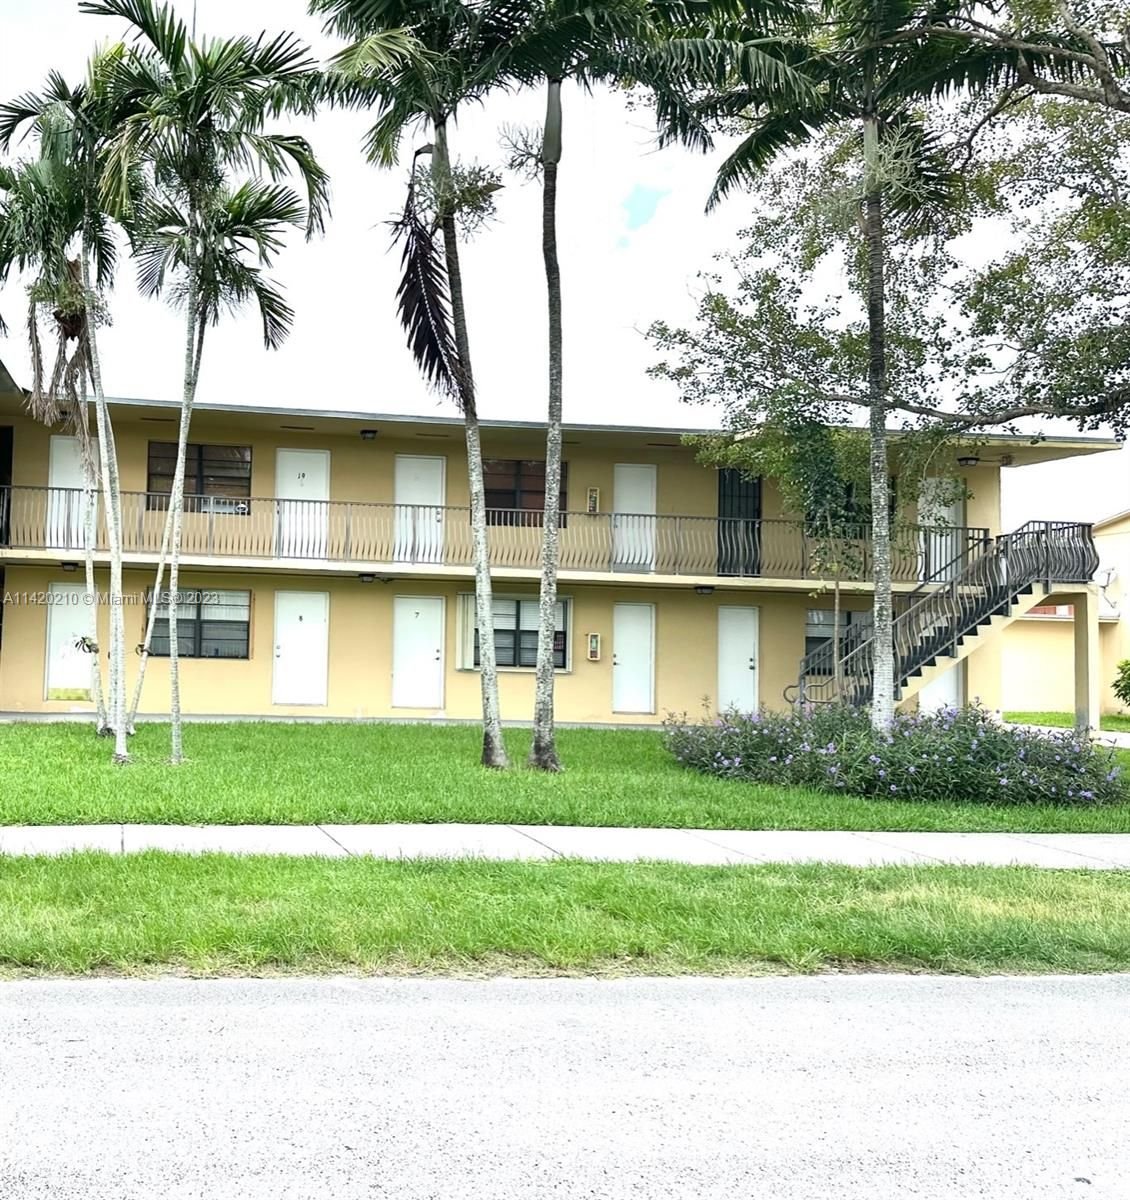 Real estate property located at 4590 67th Avenue #19, Miami-Dade County, Miami, FL